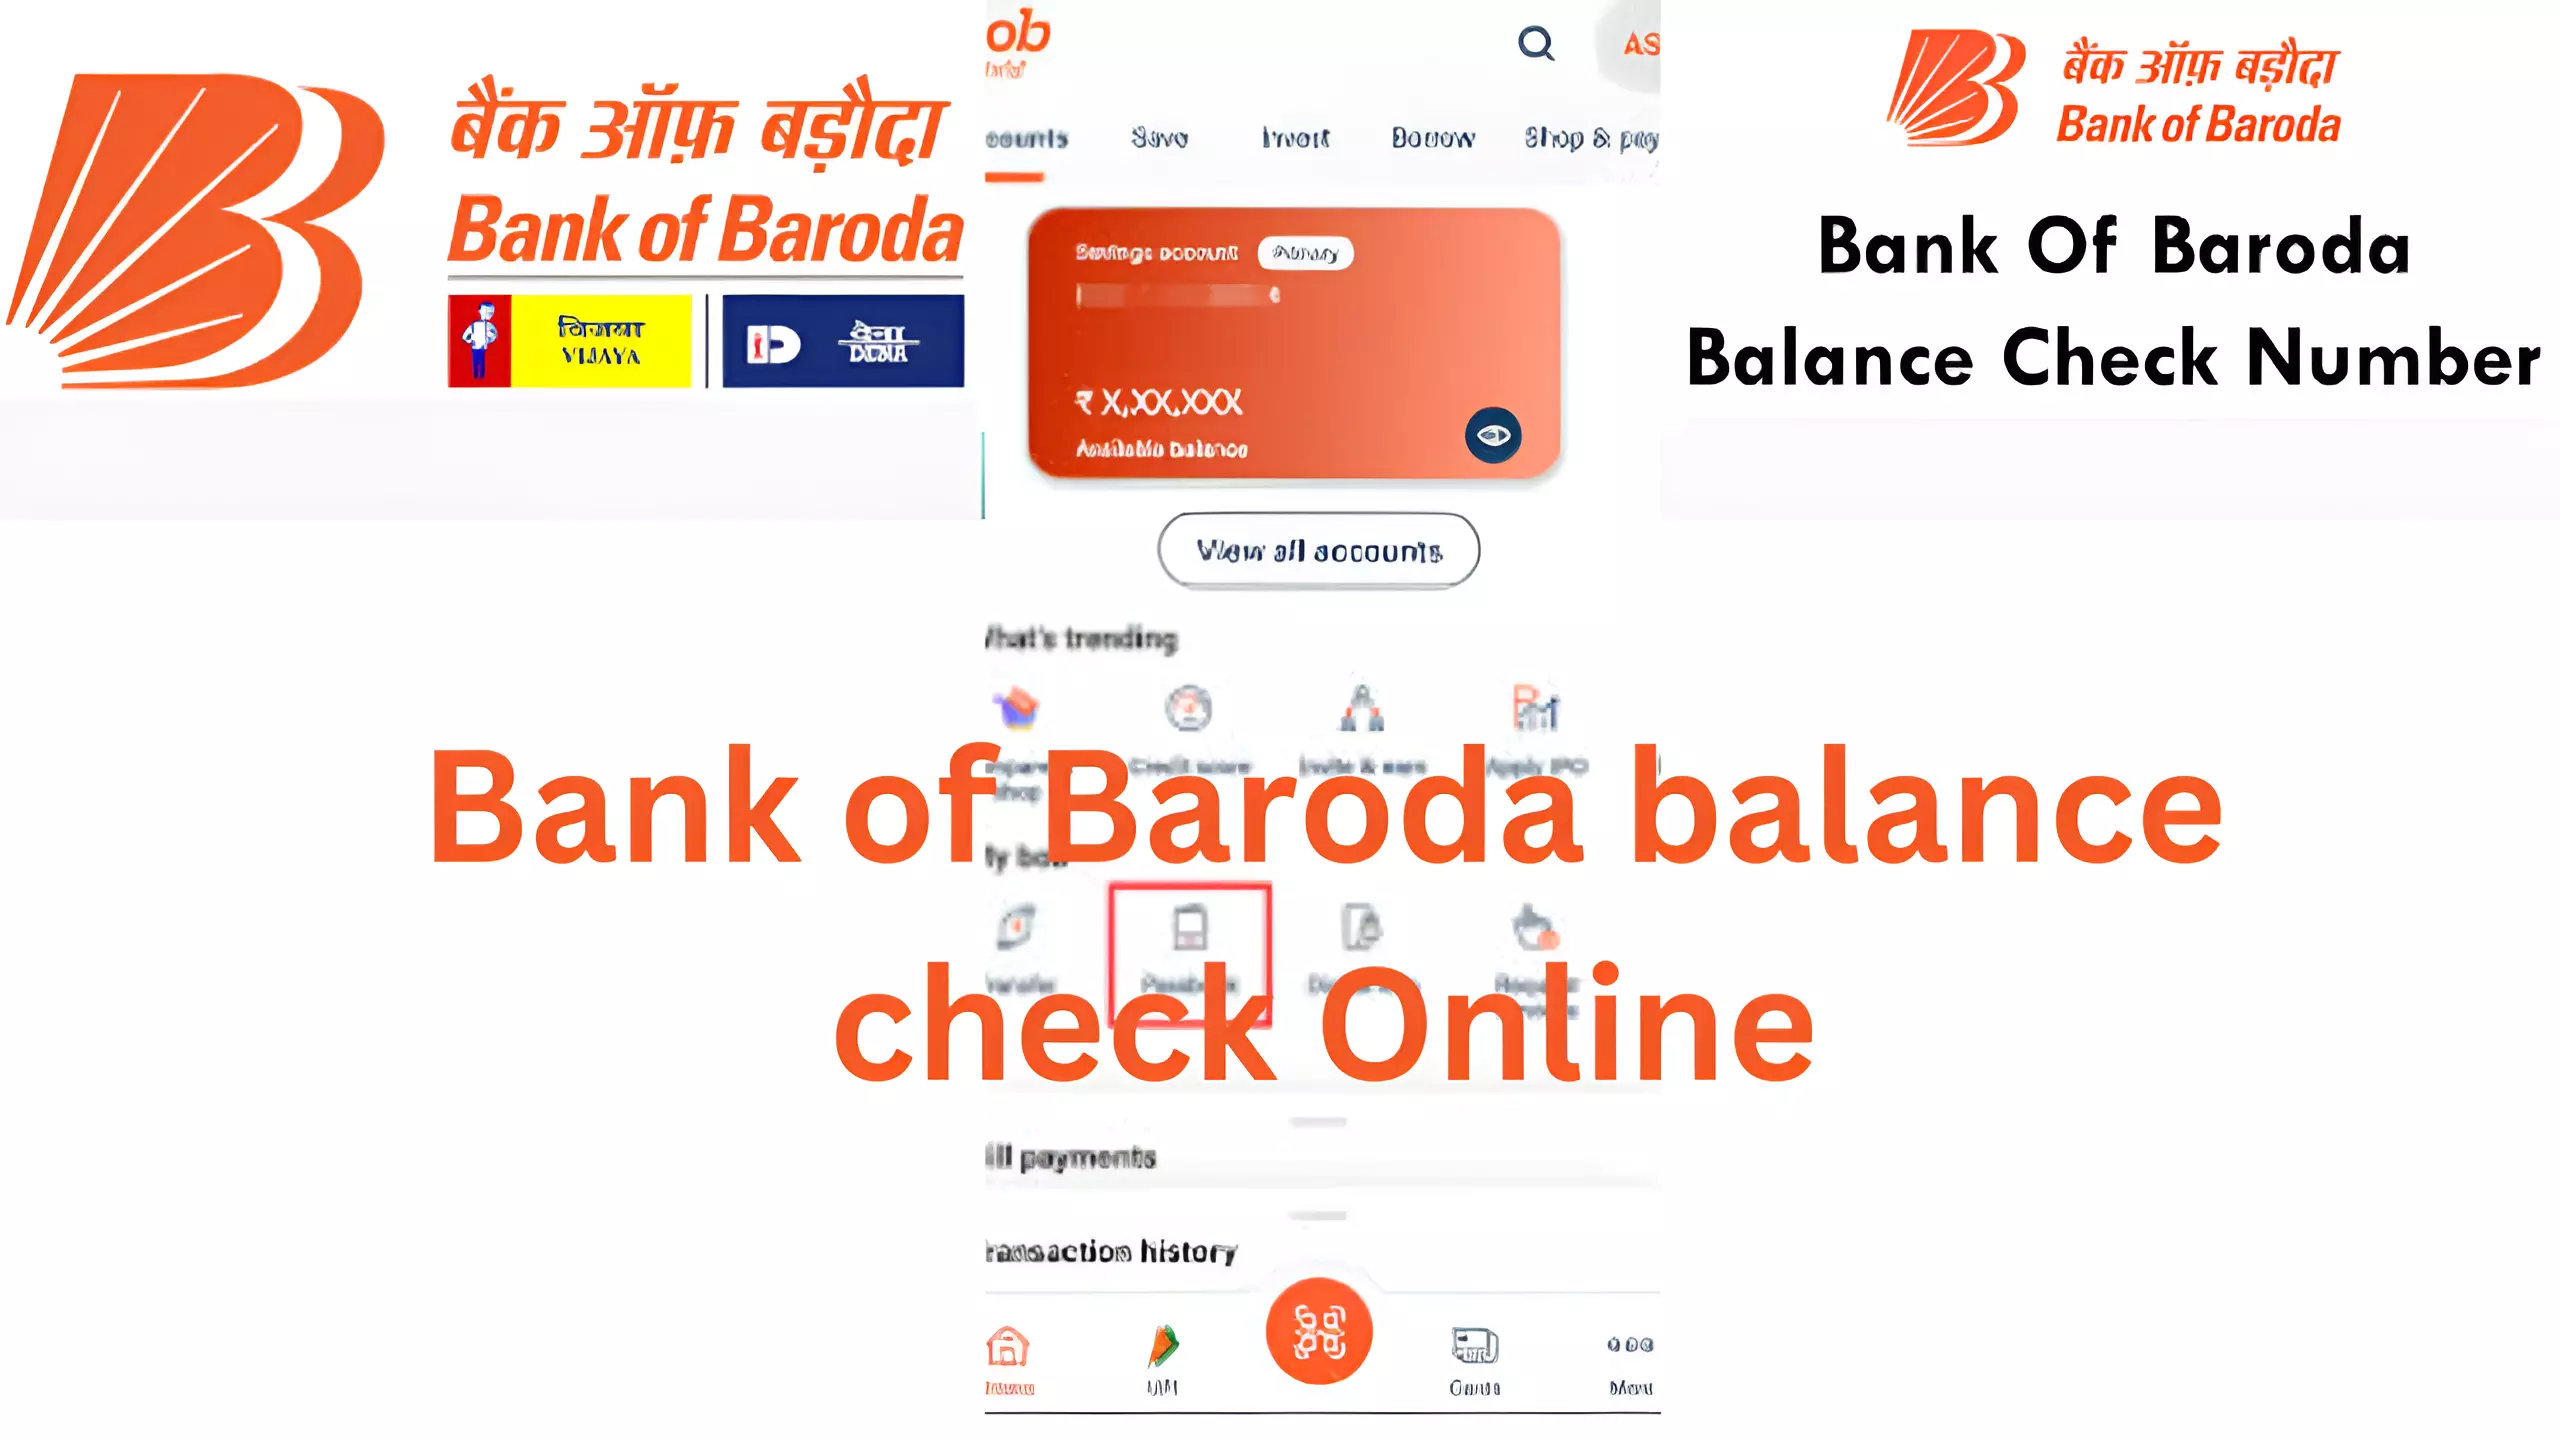 Bank of Baroda balance check Online